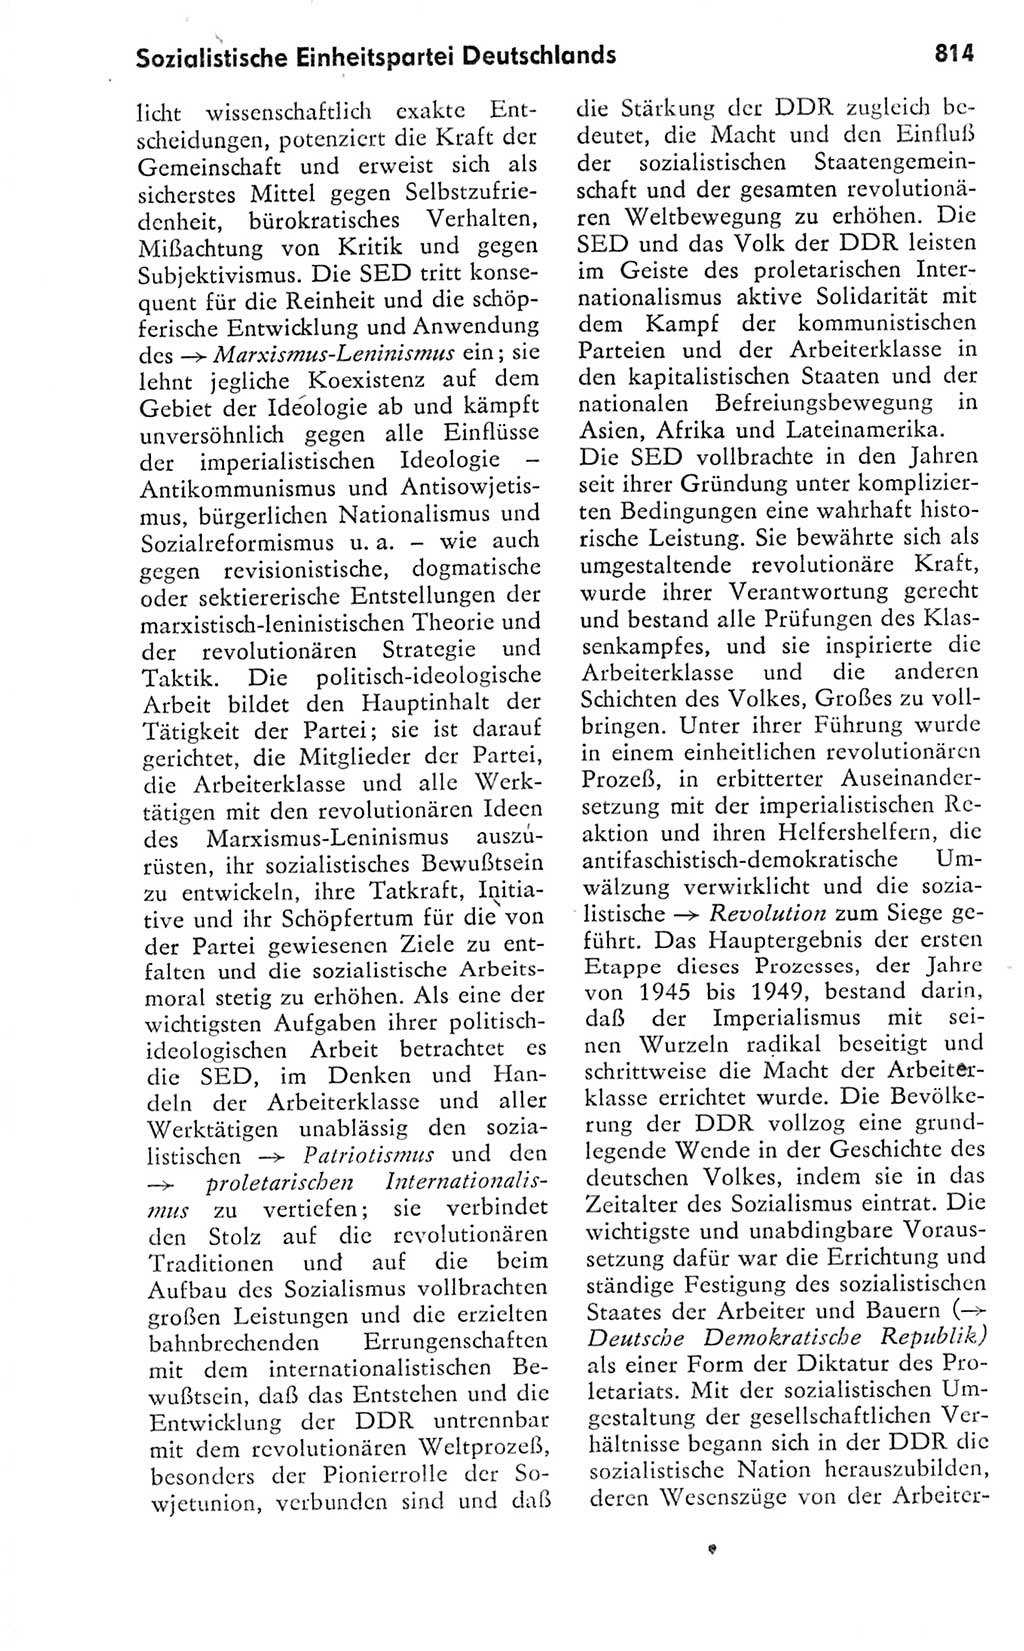 Kleines politisches Wörterbuch [Deutsche Demokratische Republik (DDR)] 1978, Seite 814 (Kl. pol. Wb. DDR 1978, S. 814)